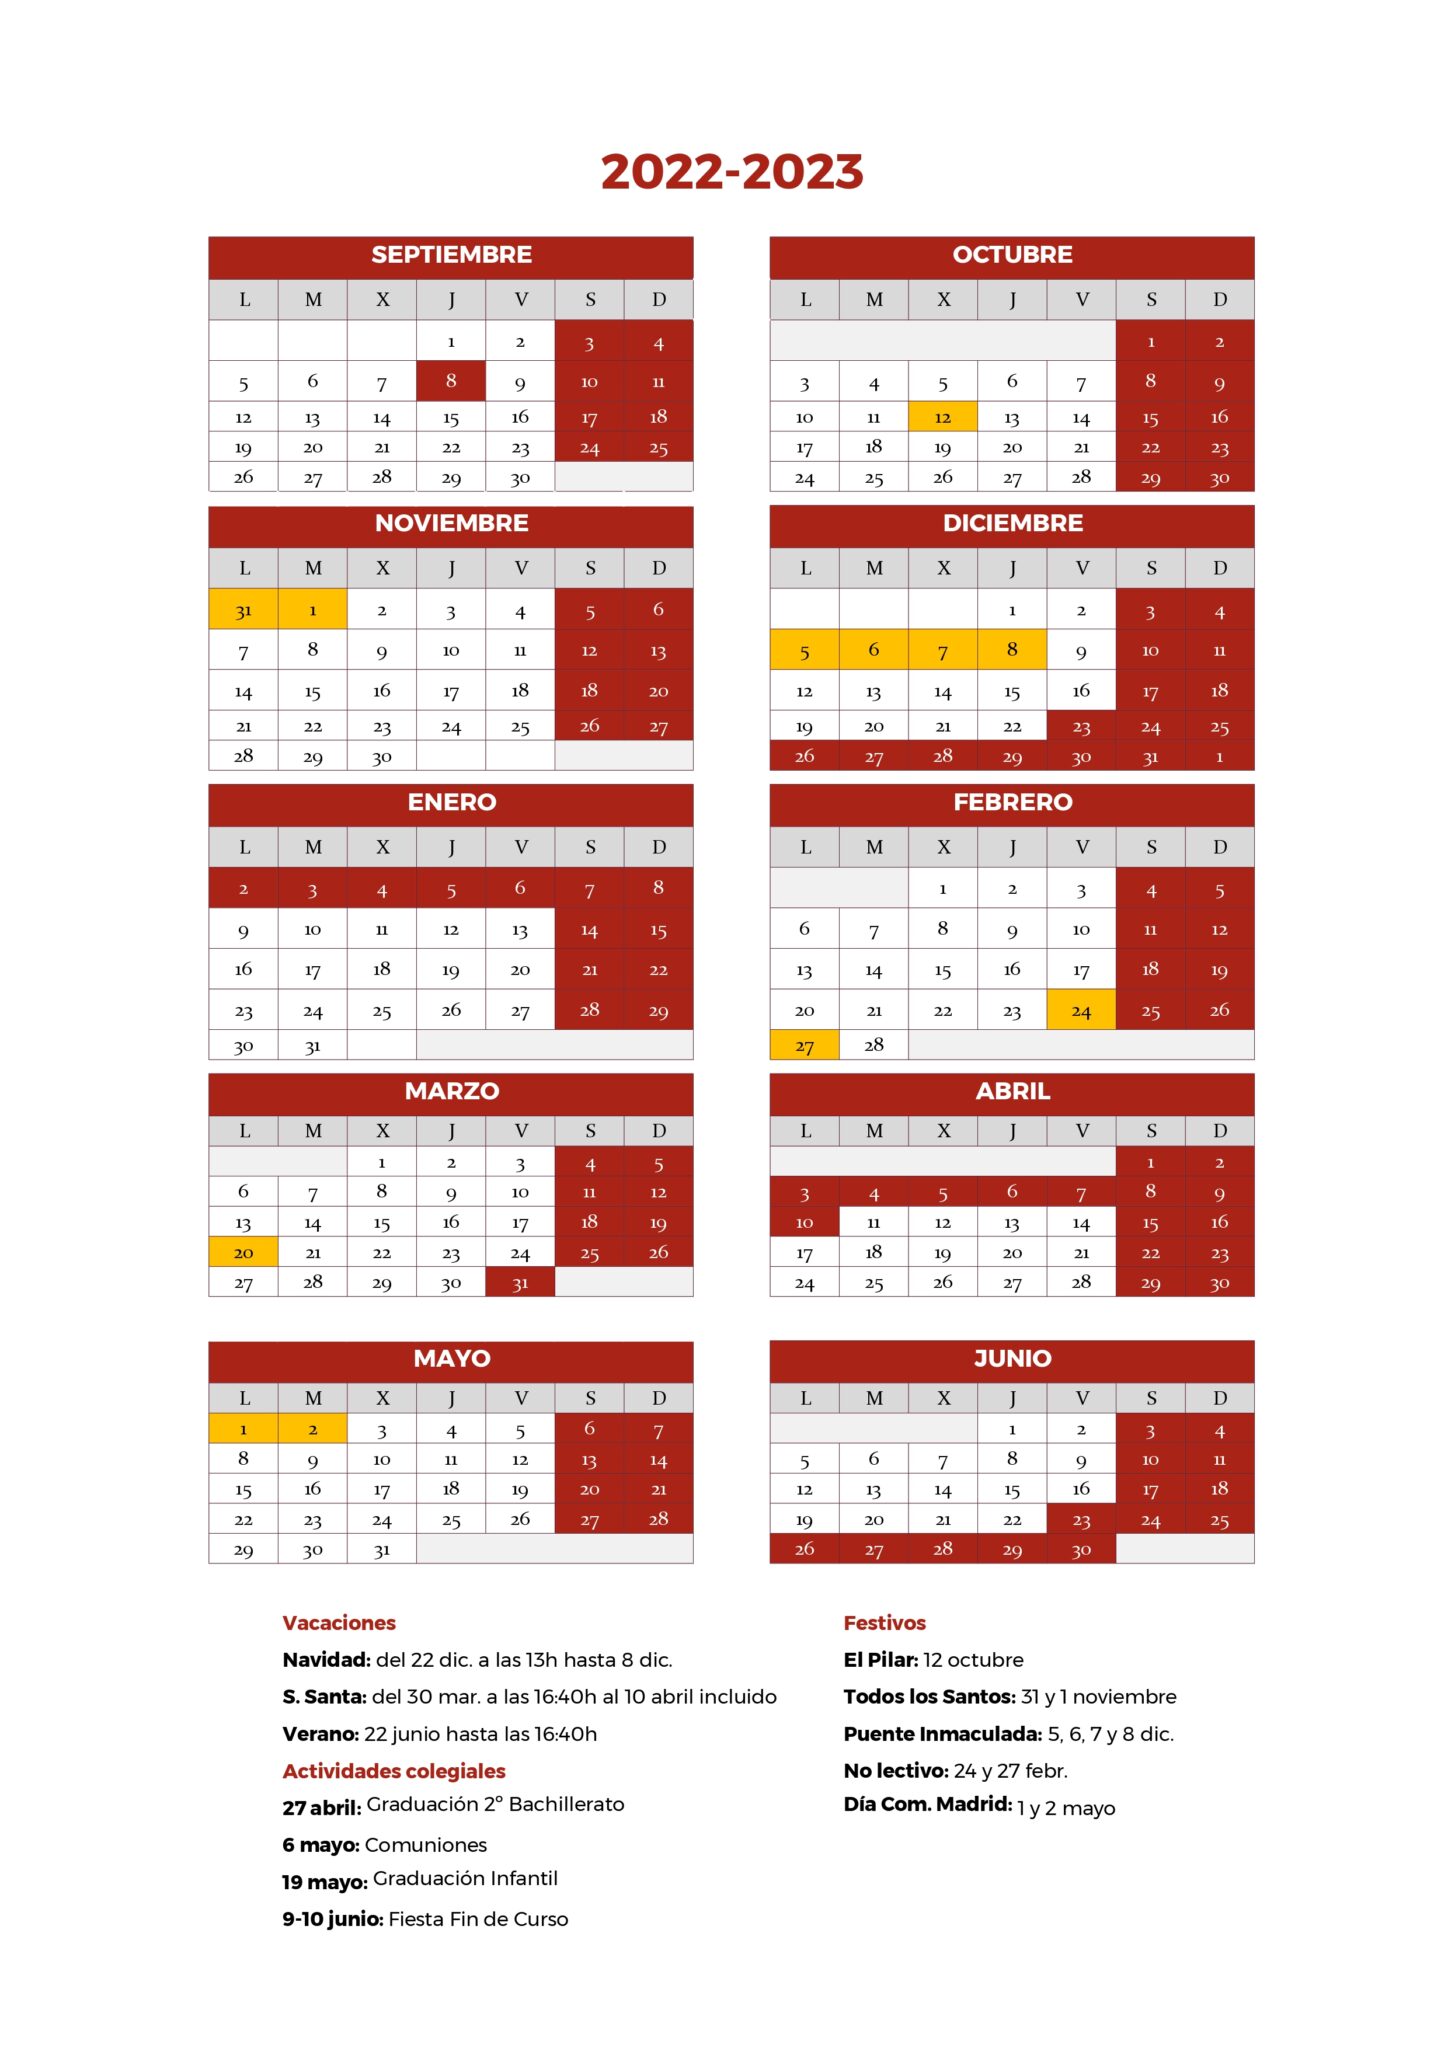 Calendario Escolar Fuenllana 2022-23 1